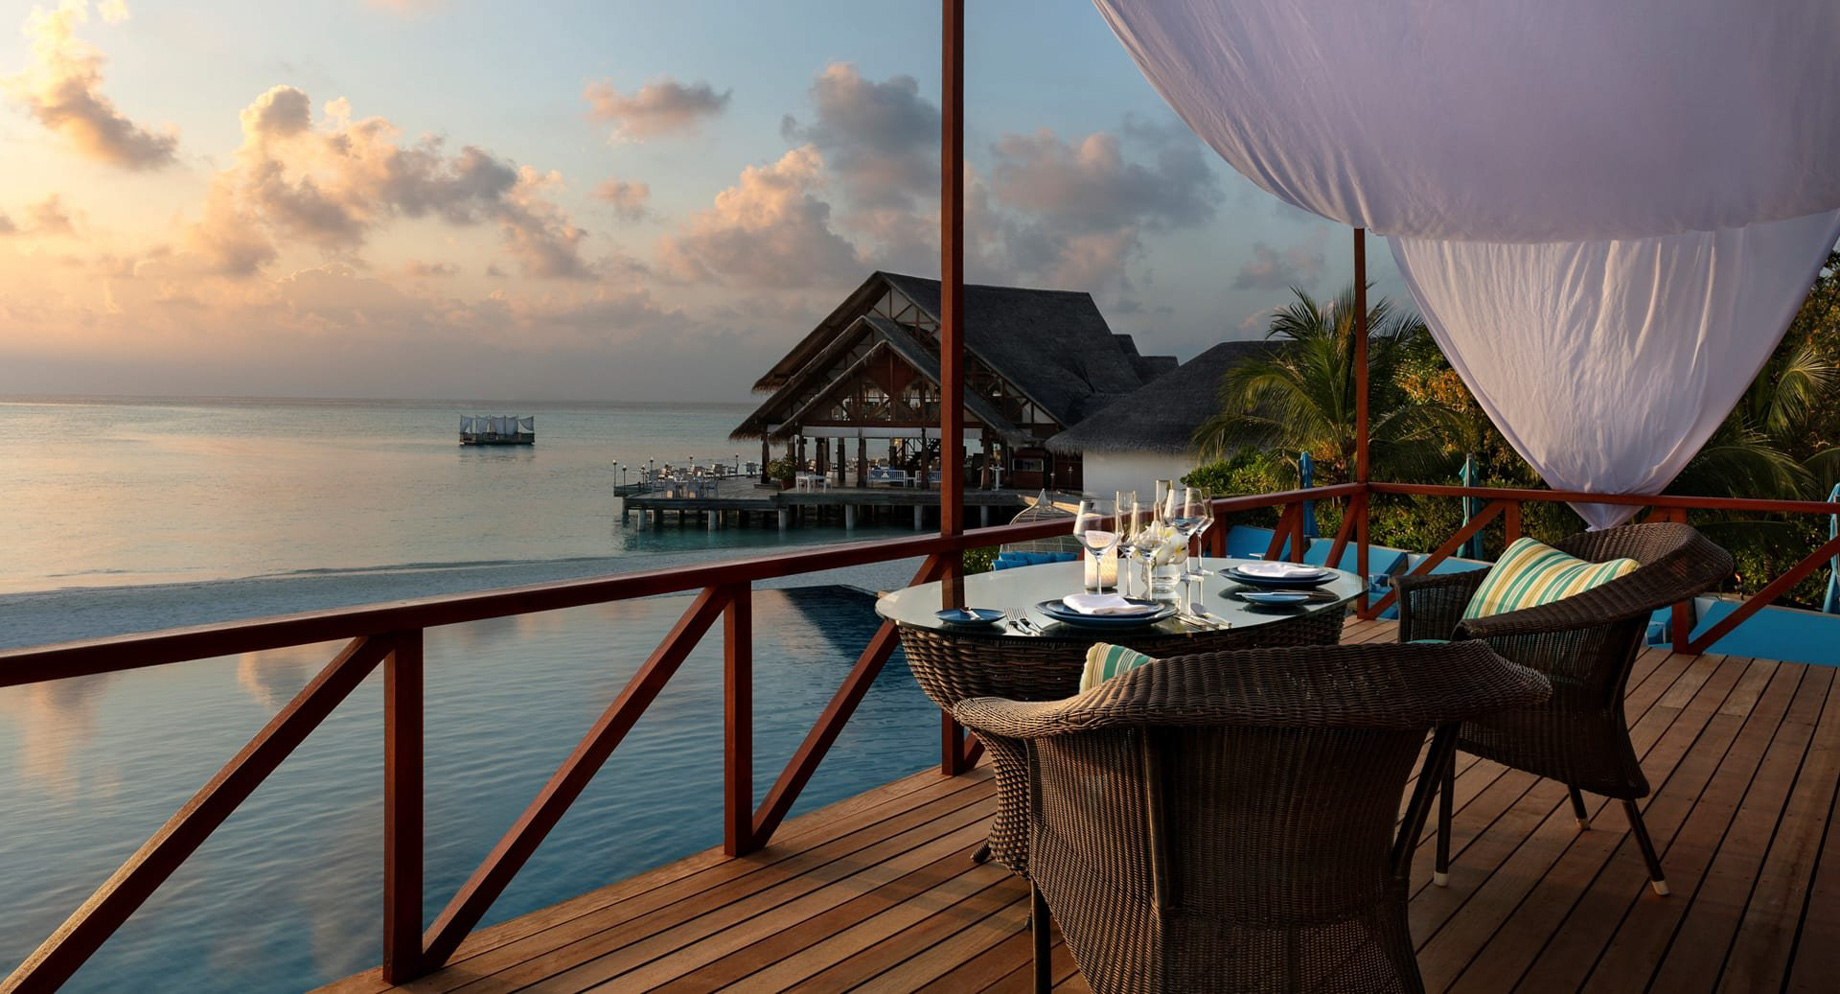 Anantara Thigu Maldives Resort – South Male Atoll, Maldives – Fushi Cafe Ocean View Dining